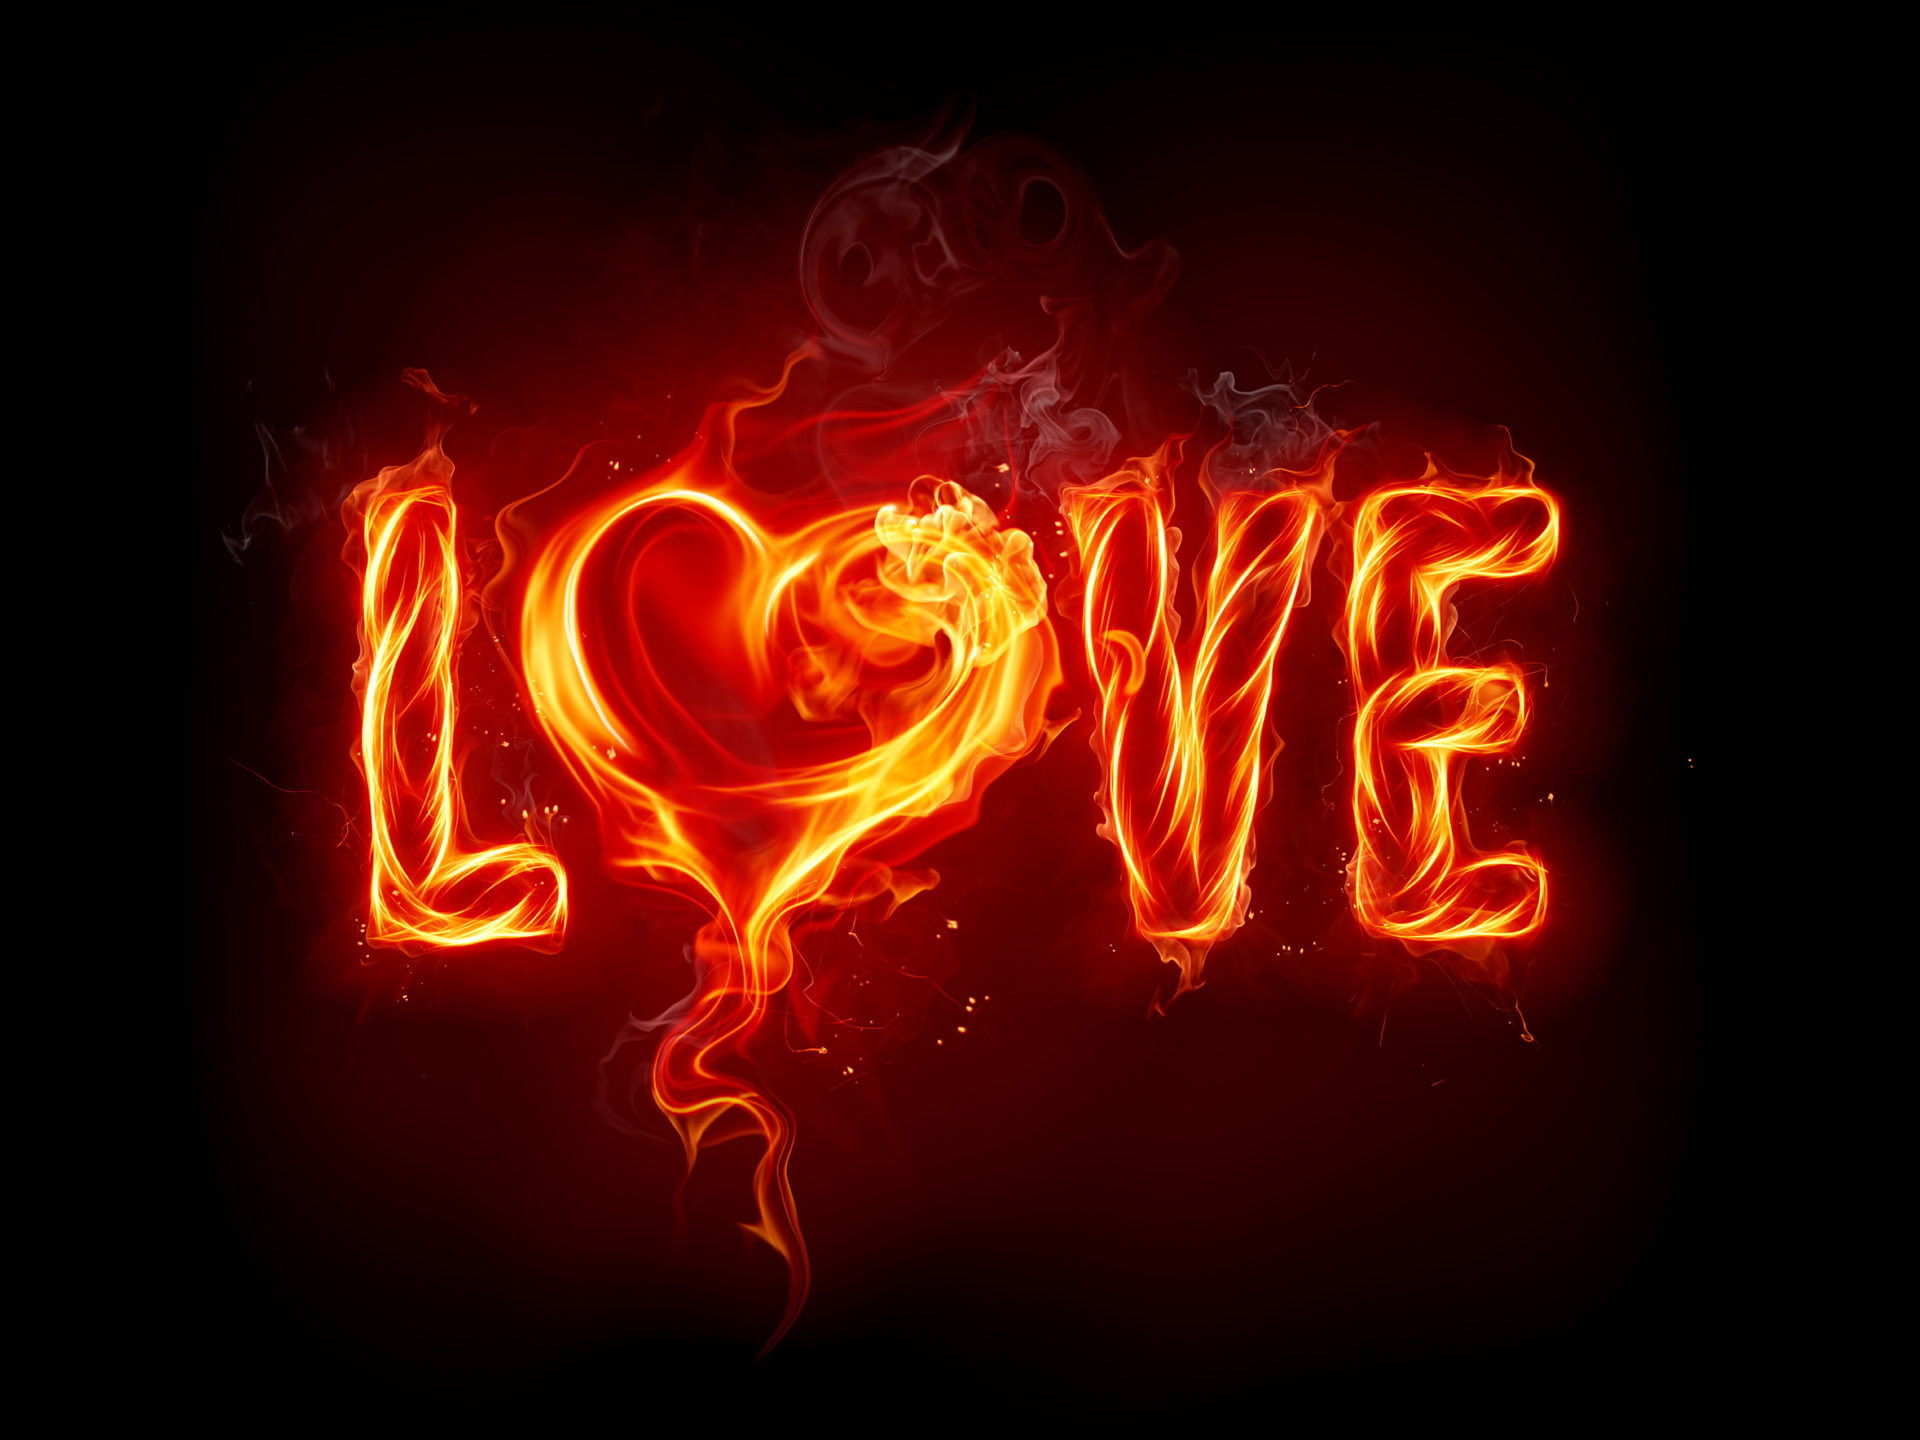 love, fire, artistic wallpaper for mobile